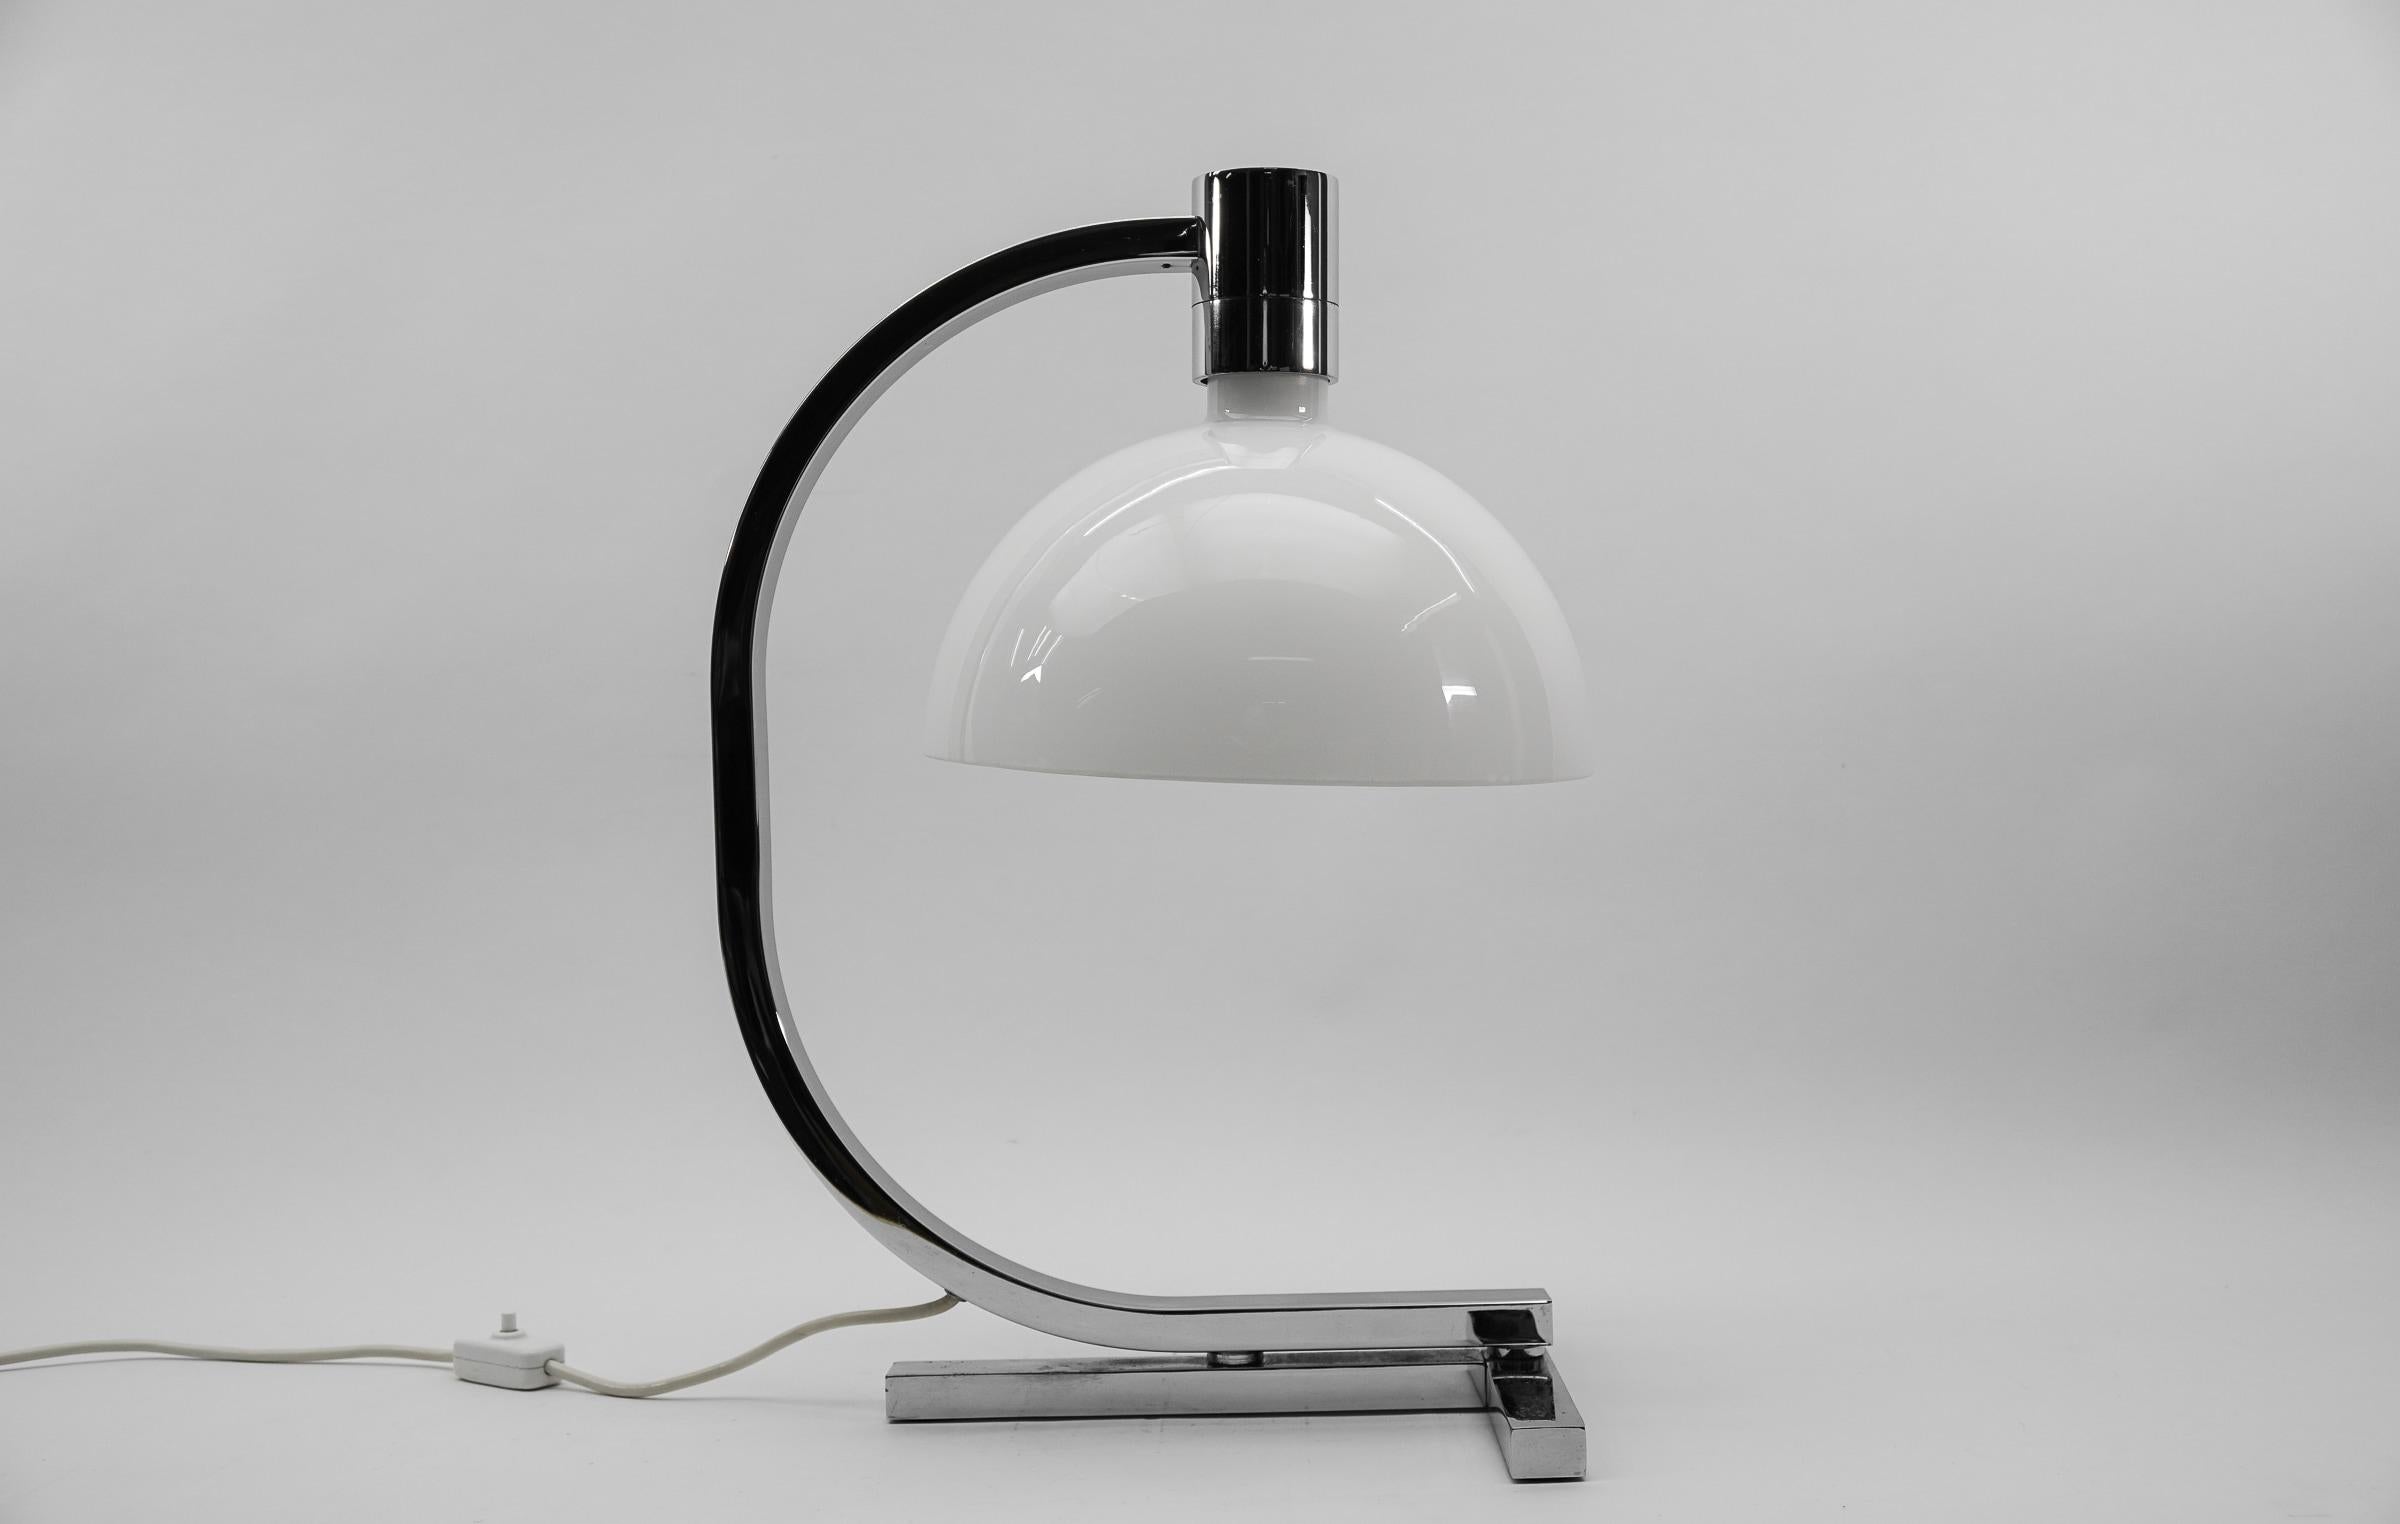 Lampe de bureau par Franco Albini, Franca Helg & Antonio Piva pour Sirrah, Italie 1960s

La lampe nécessite une ampoule à vis Edison E27 / E26, elle est câblée et en état de fonctionnement. Il fonctionne à la fois sur 110 et 230 volts.